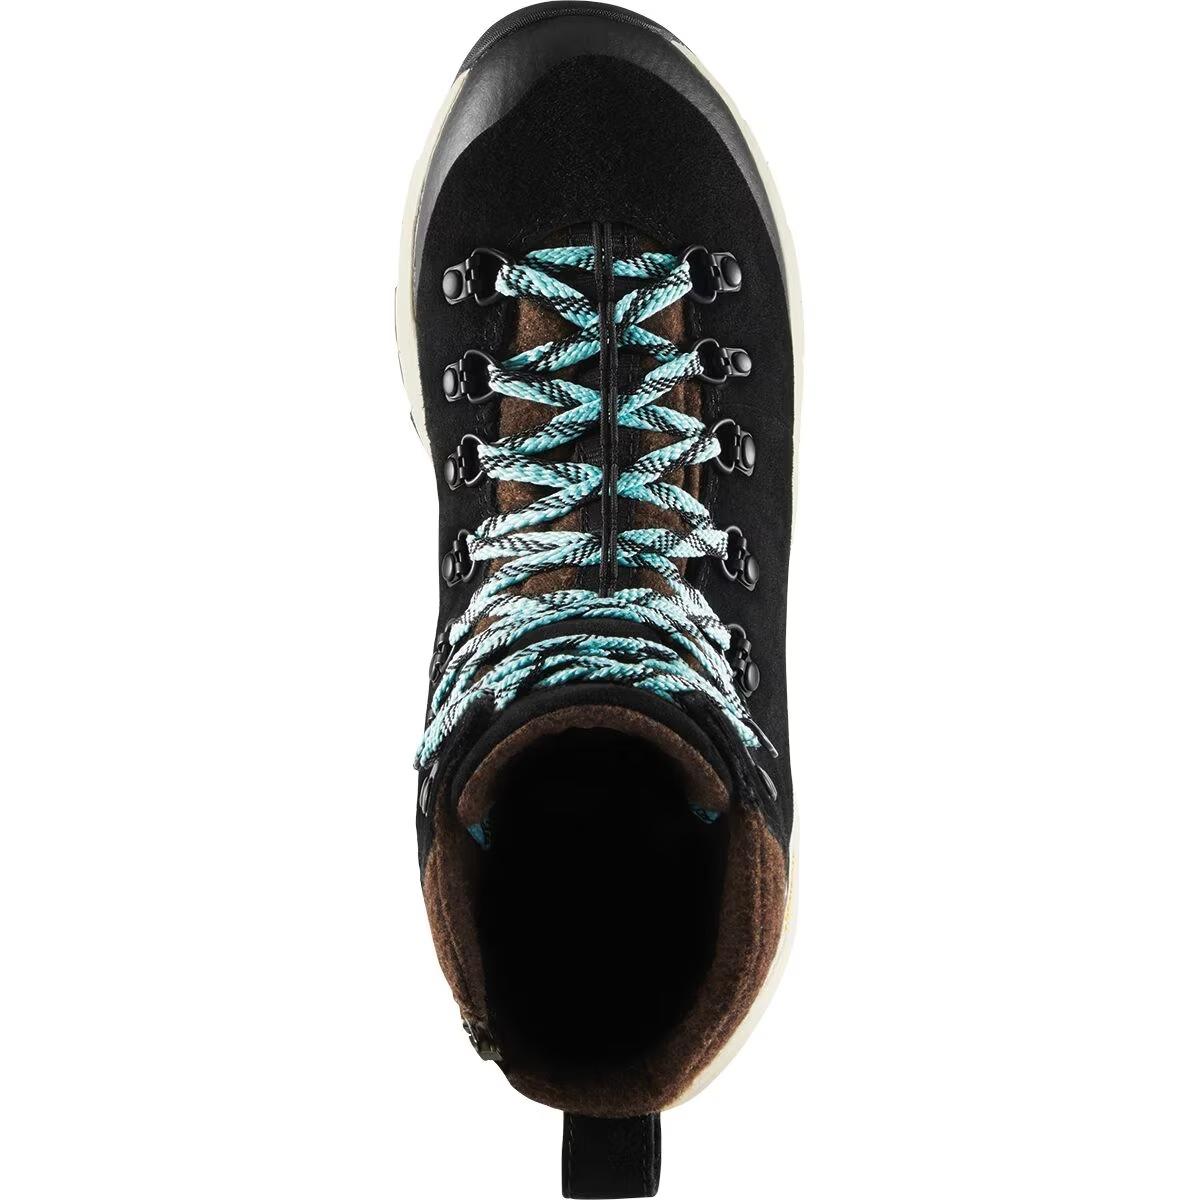 Danner Arctic 600 Side-Zip Boot - Women's